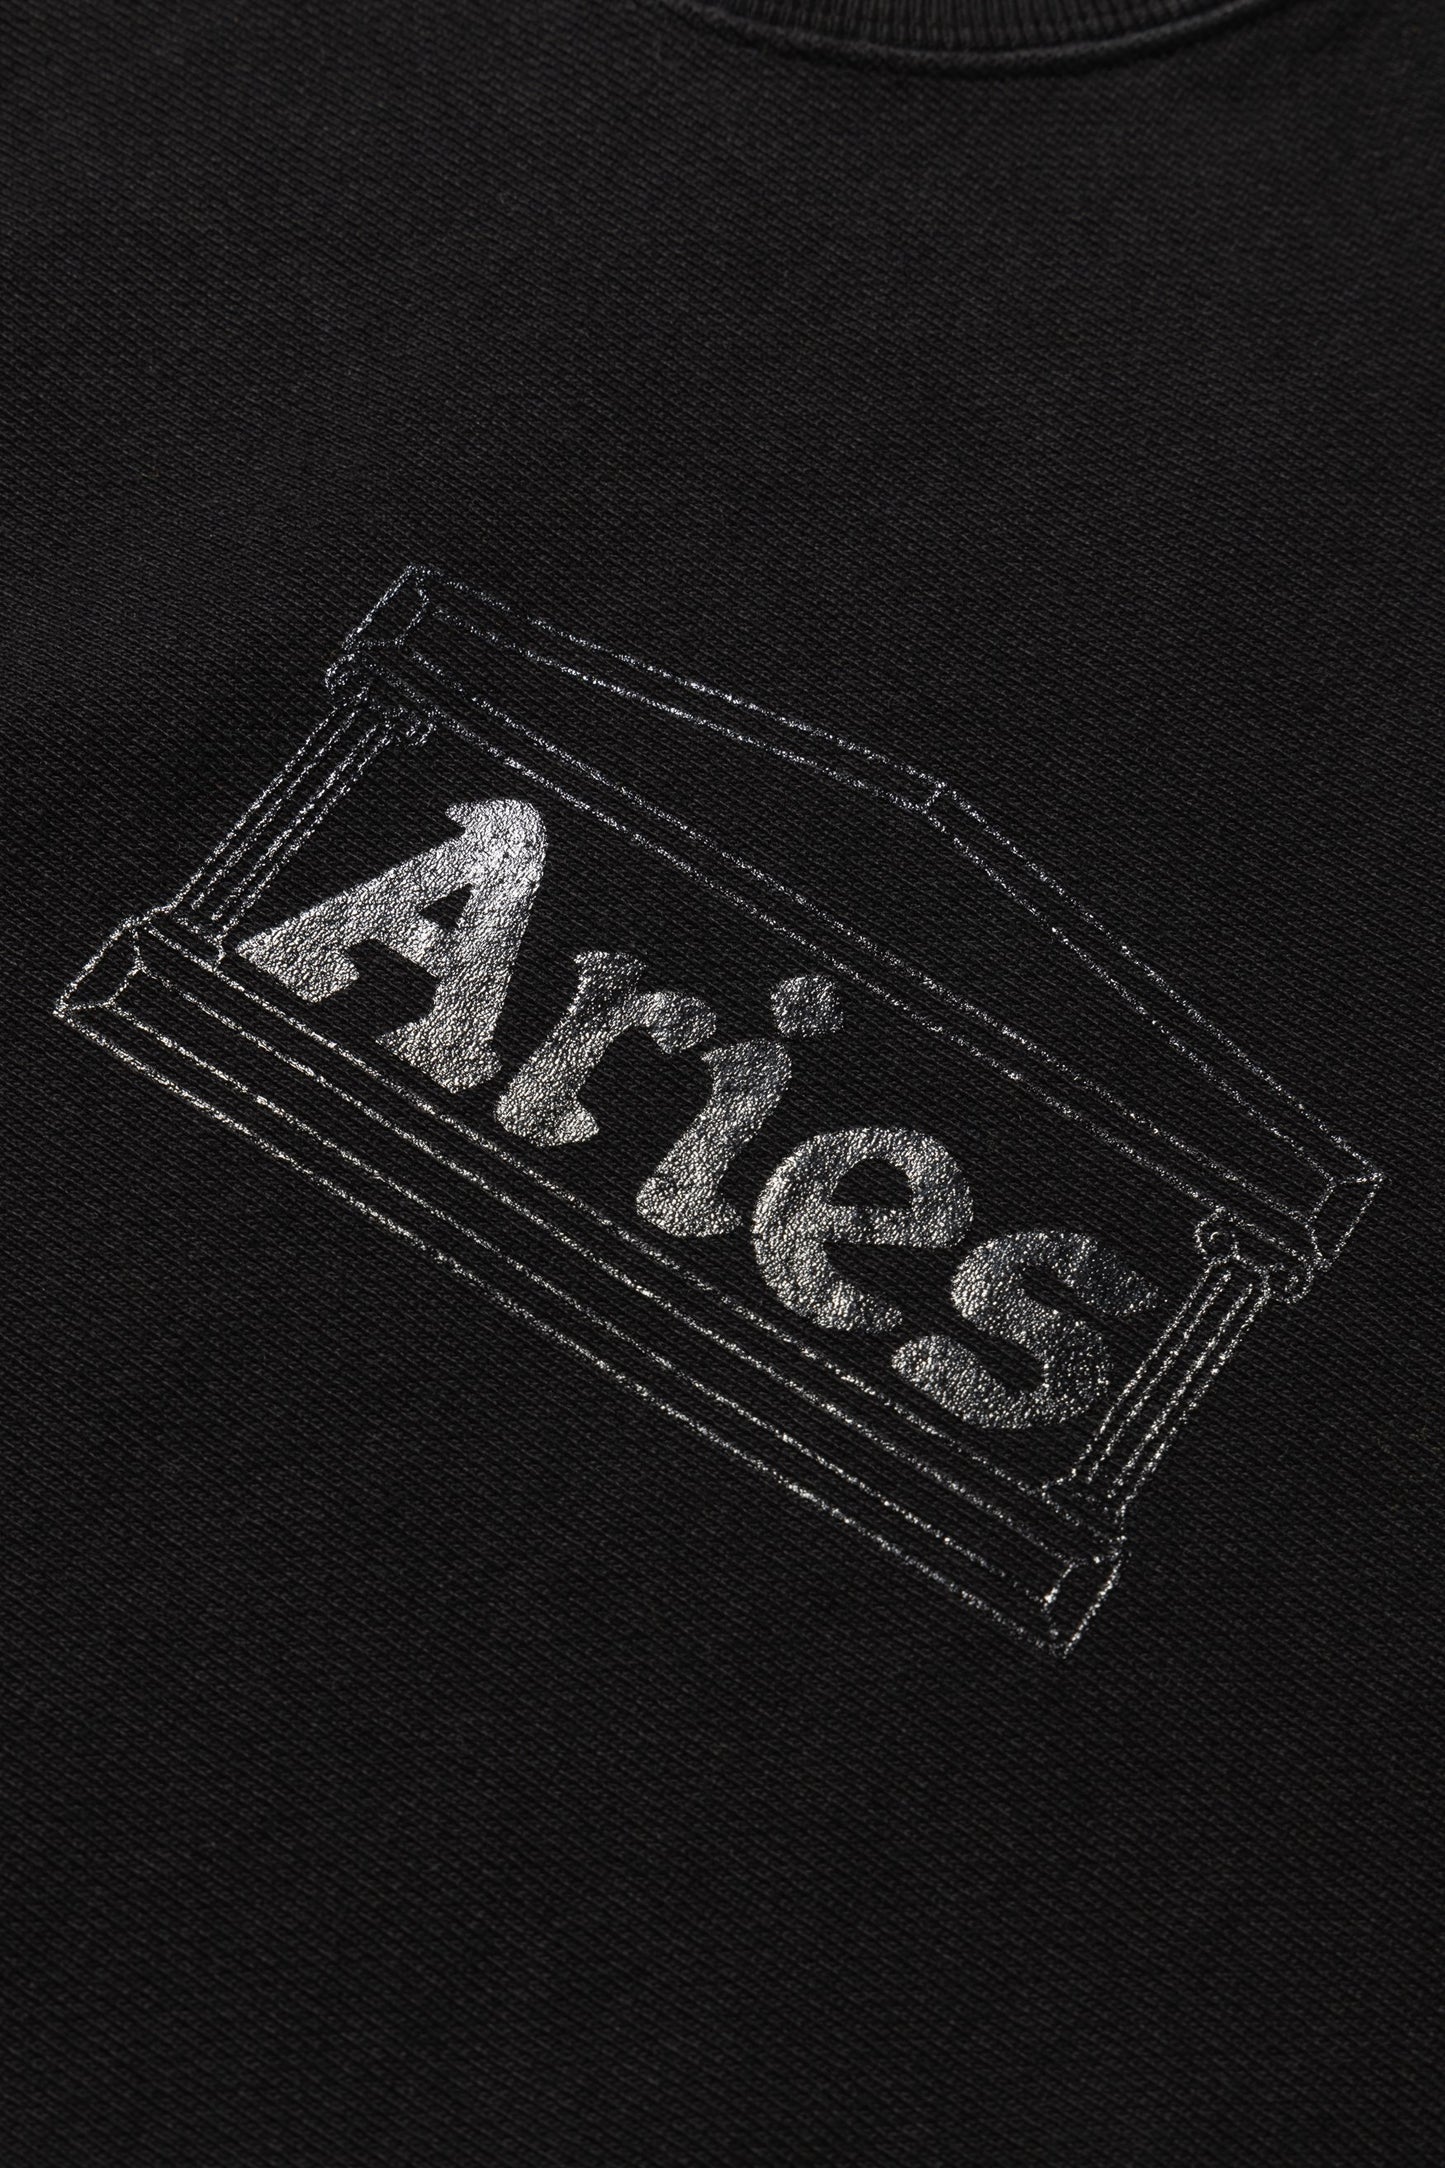 Aries Arise Premium Temple Sweatshirt